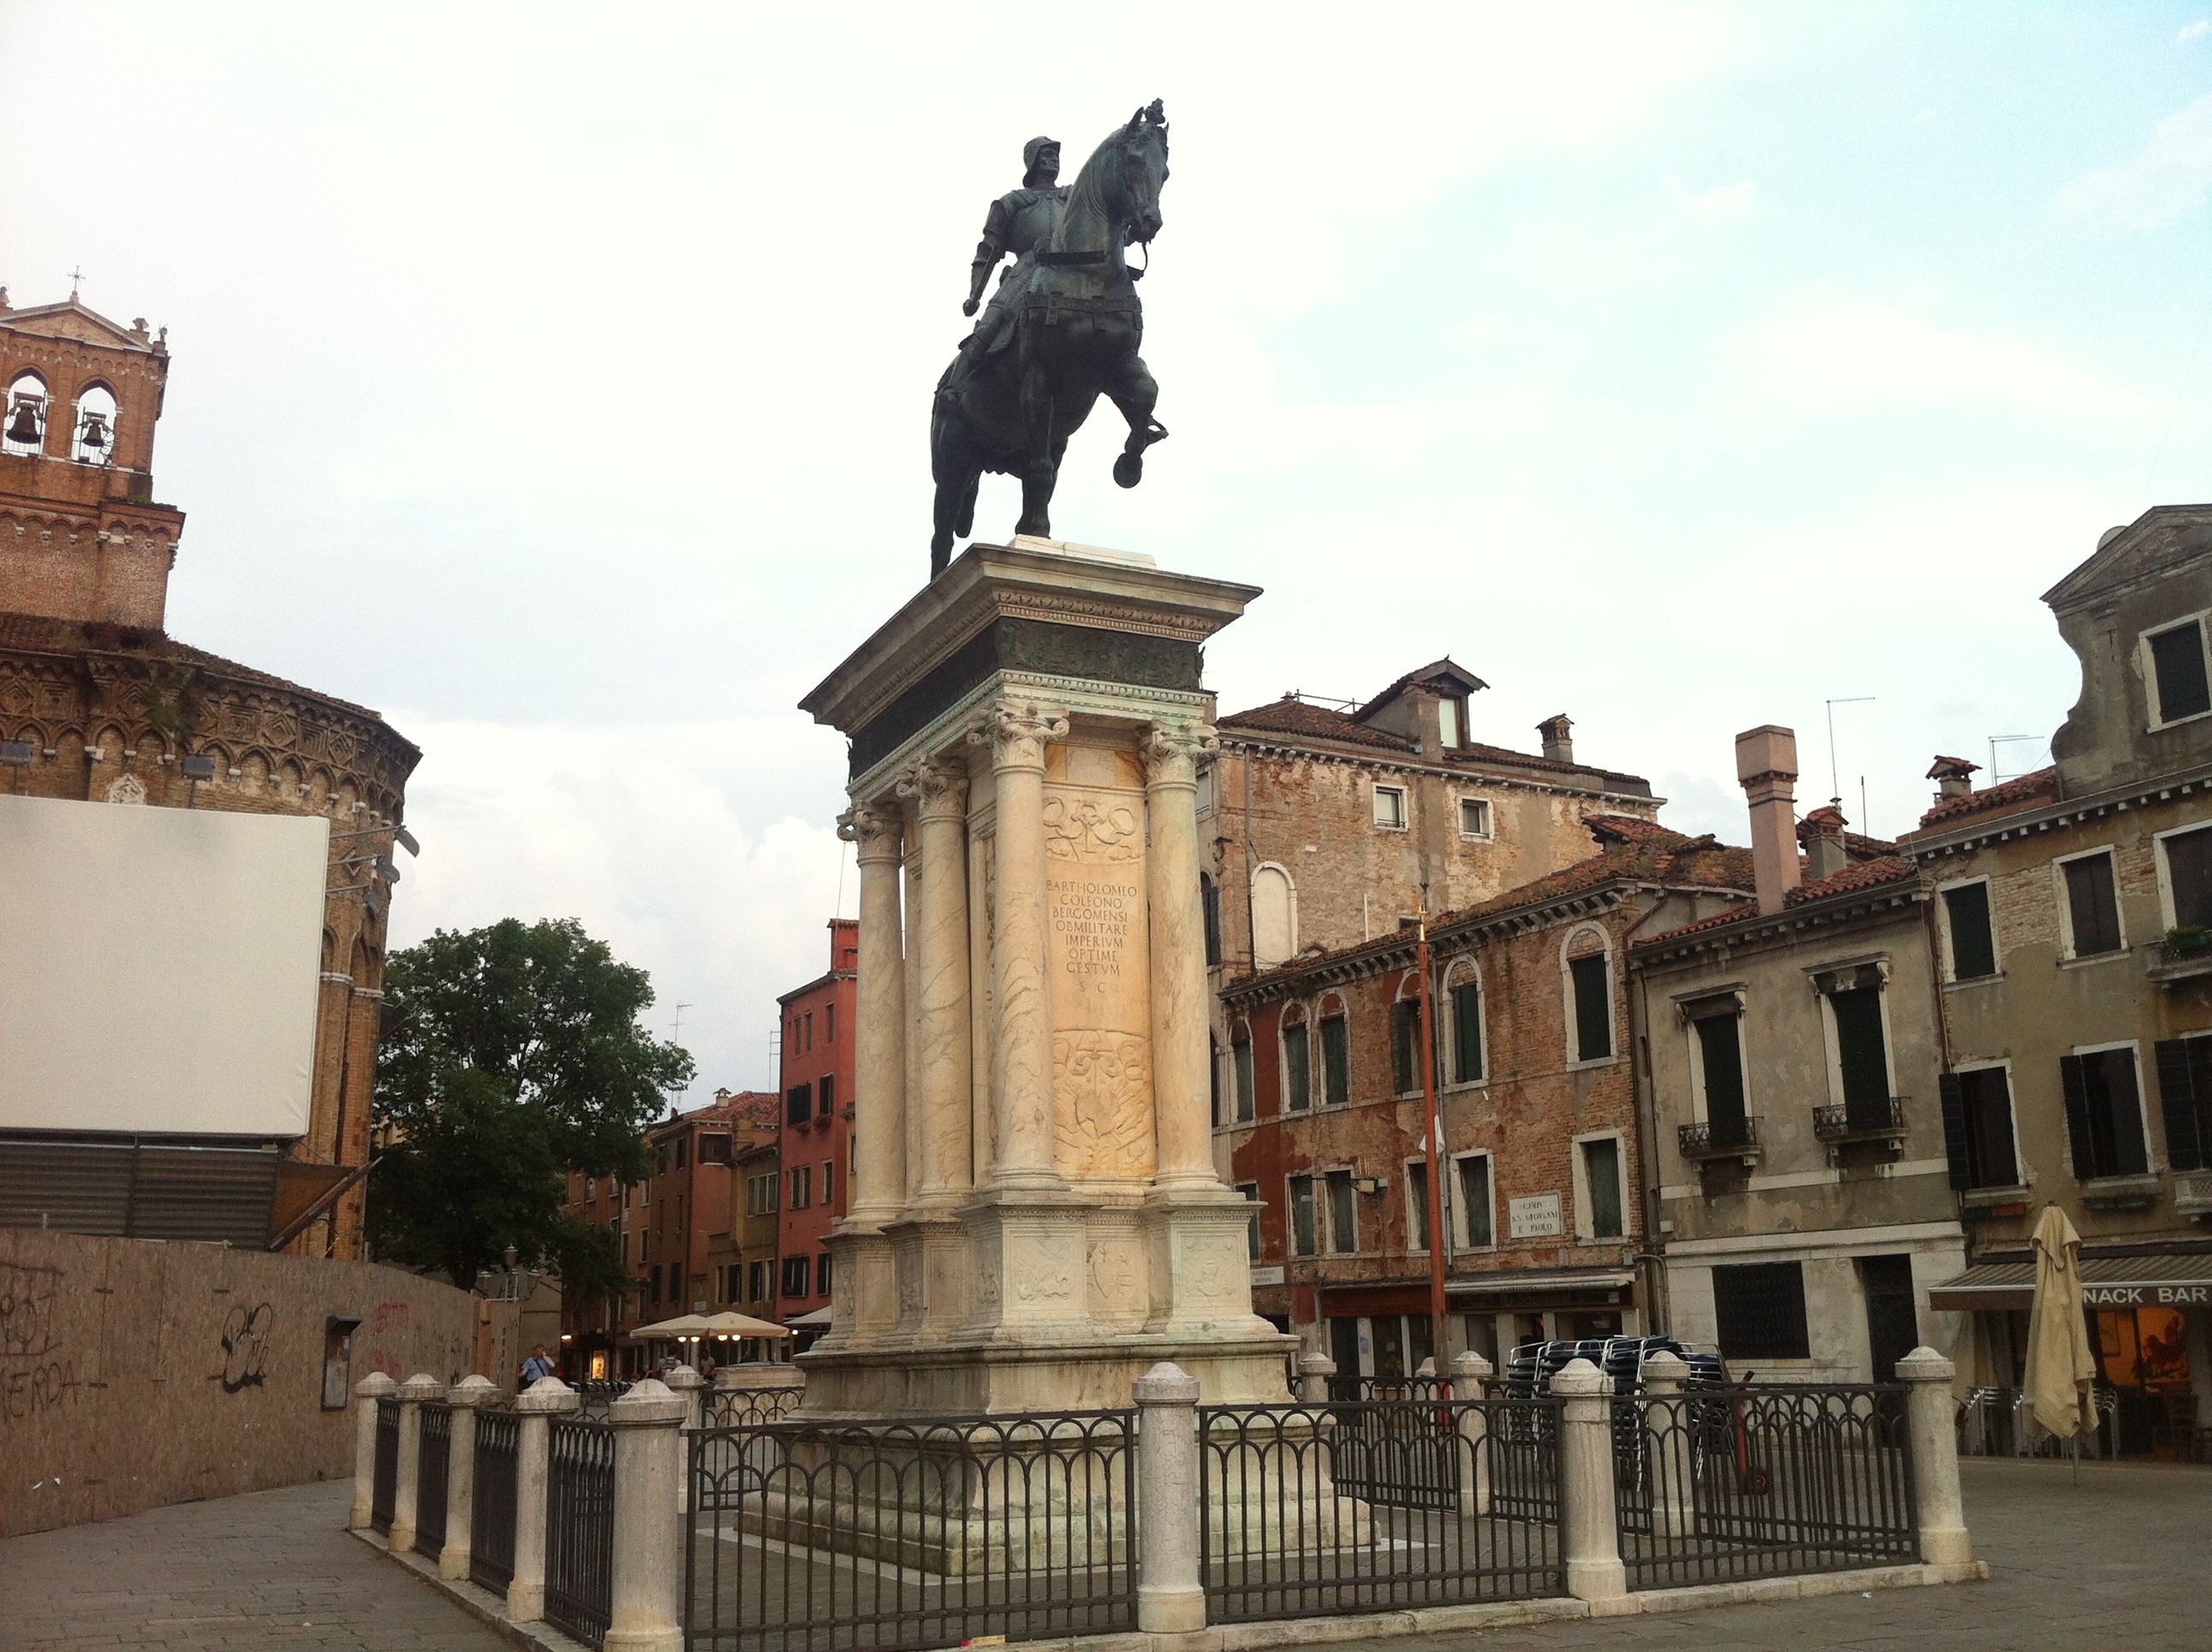 Verrocchio’s equestrian statue of Bartolomeo Colleoni